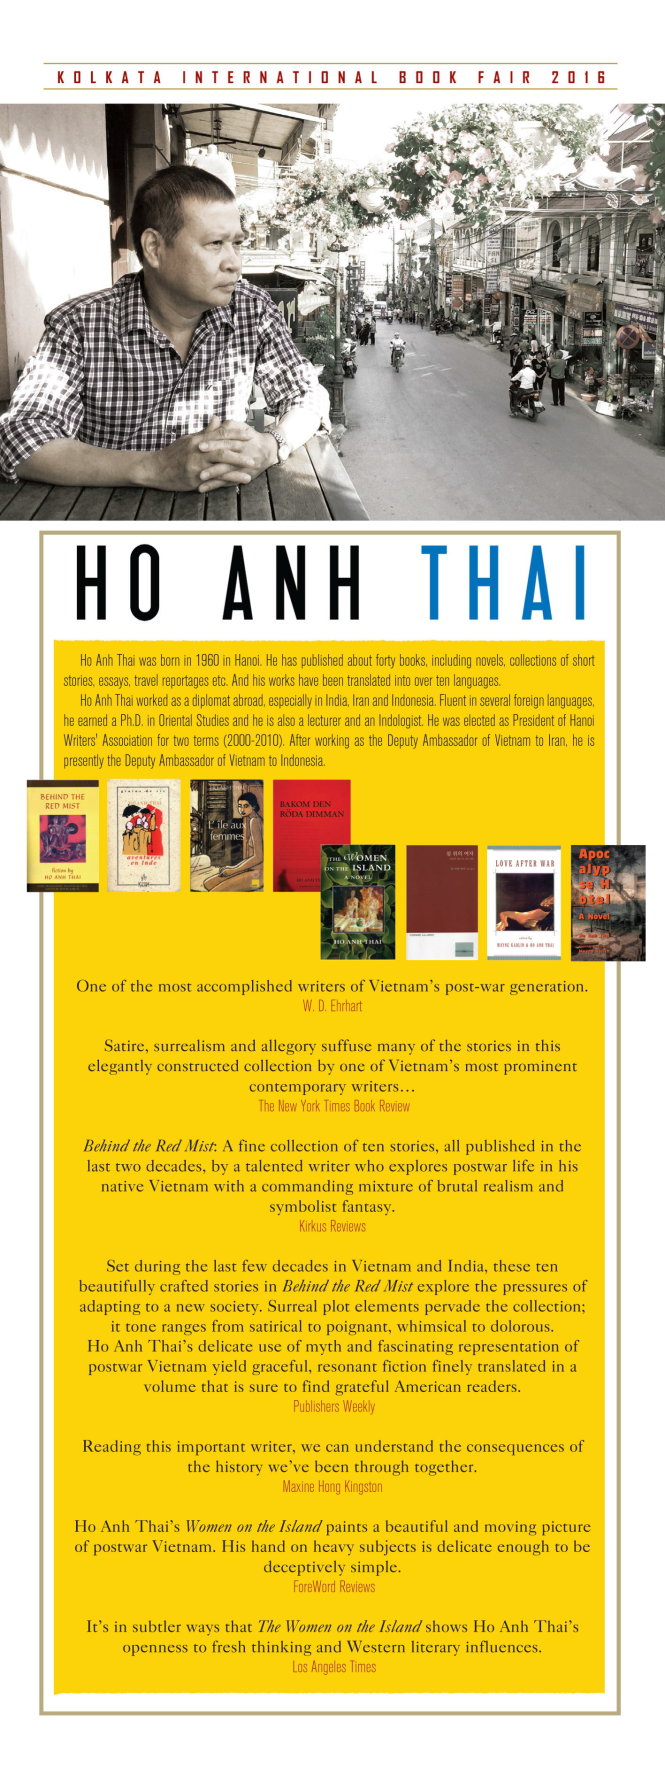 Áp phích về cuộc giao lưu của nhà văn Hồ Anh Thái tại Hội chợ sách quốc tế Kolkata